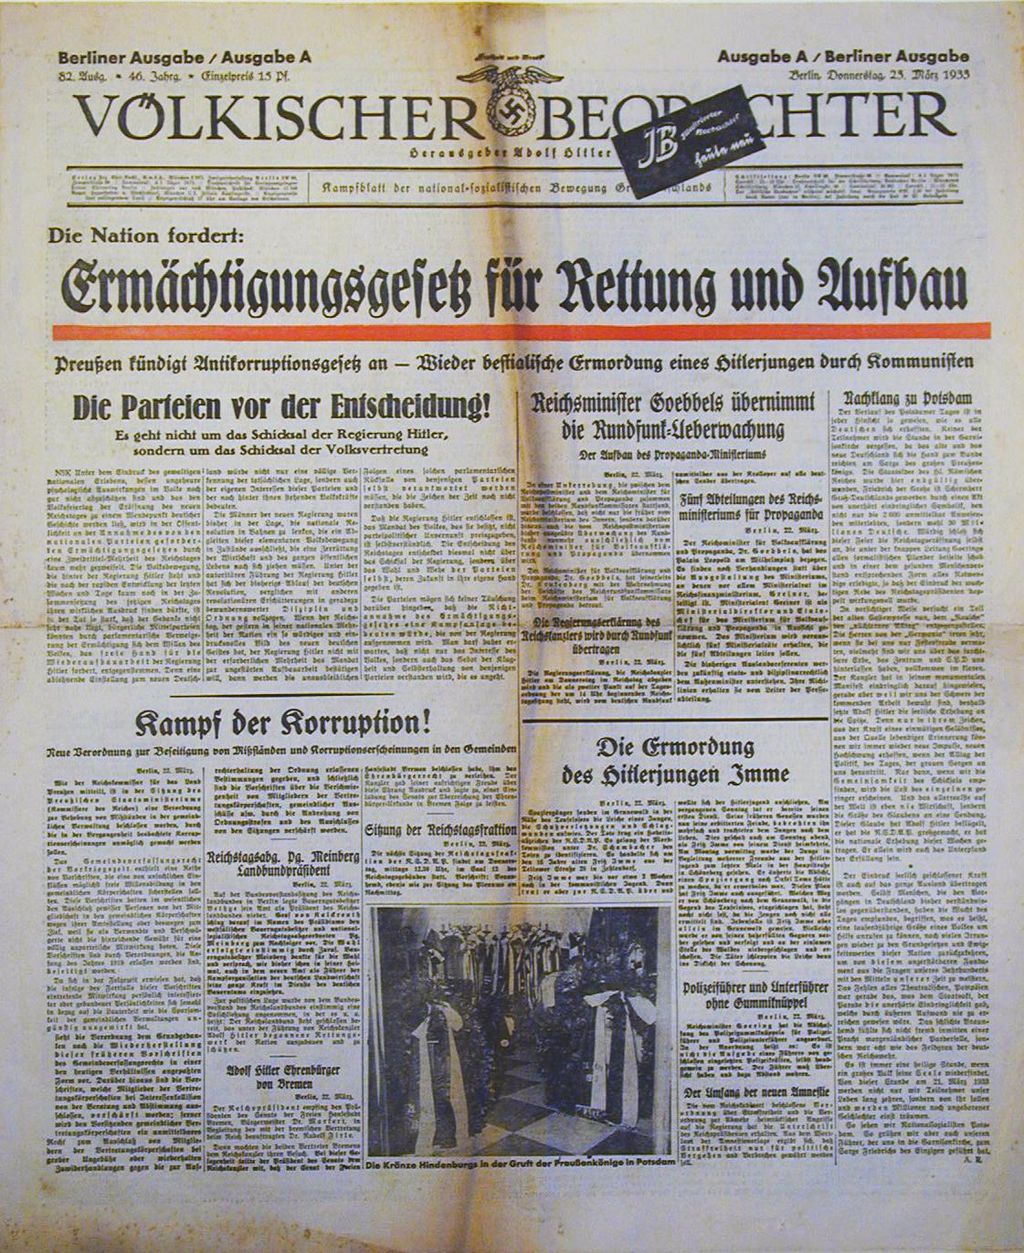 Zeitung: "Völkischer Beobachter" zum Ermächtigungsgesetz, 1933